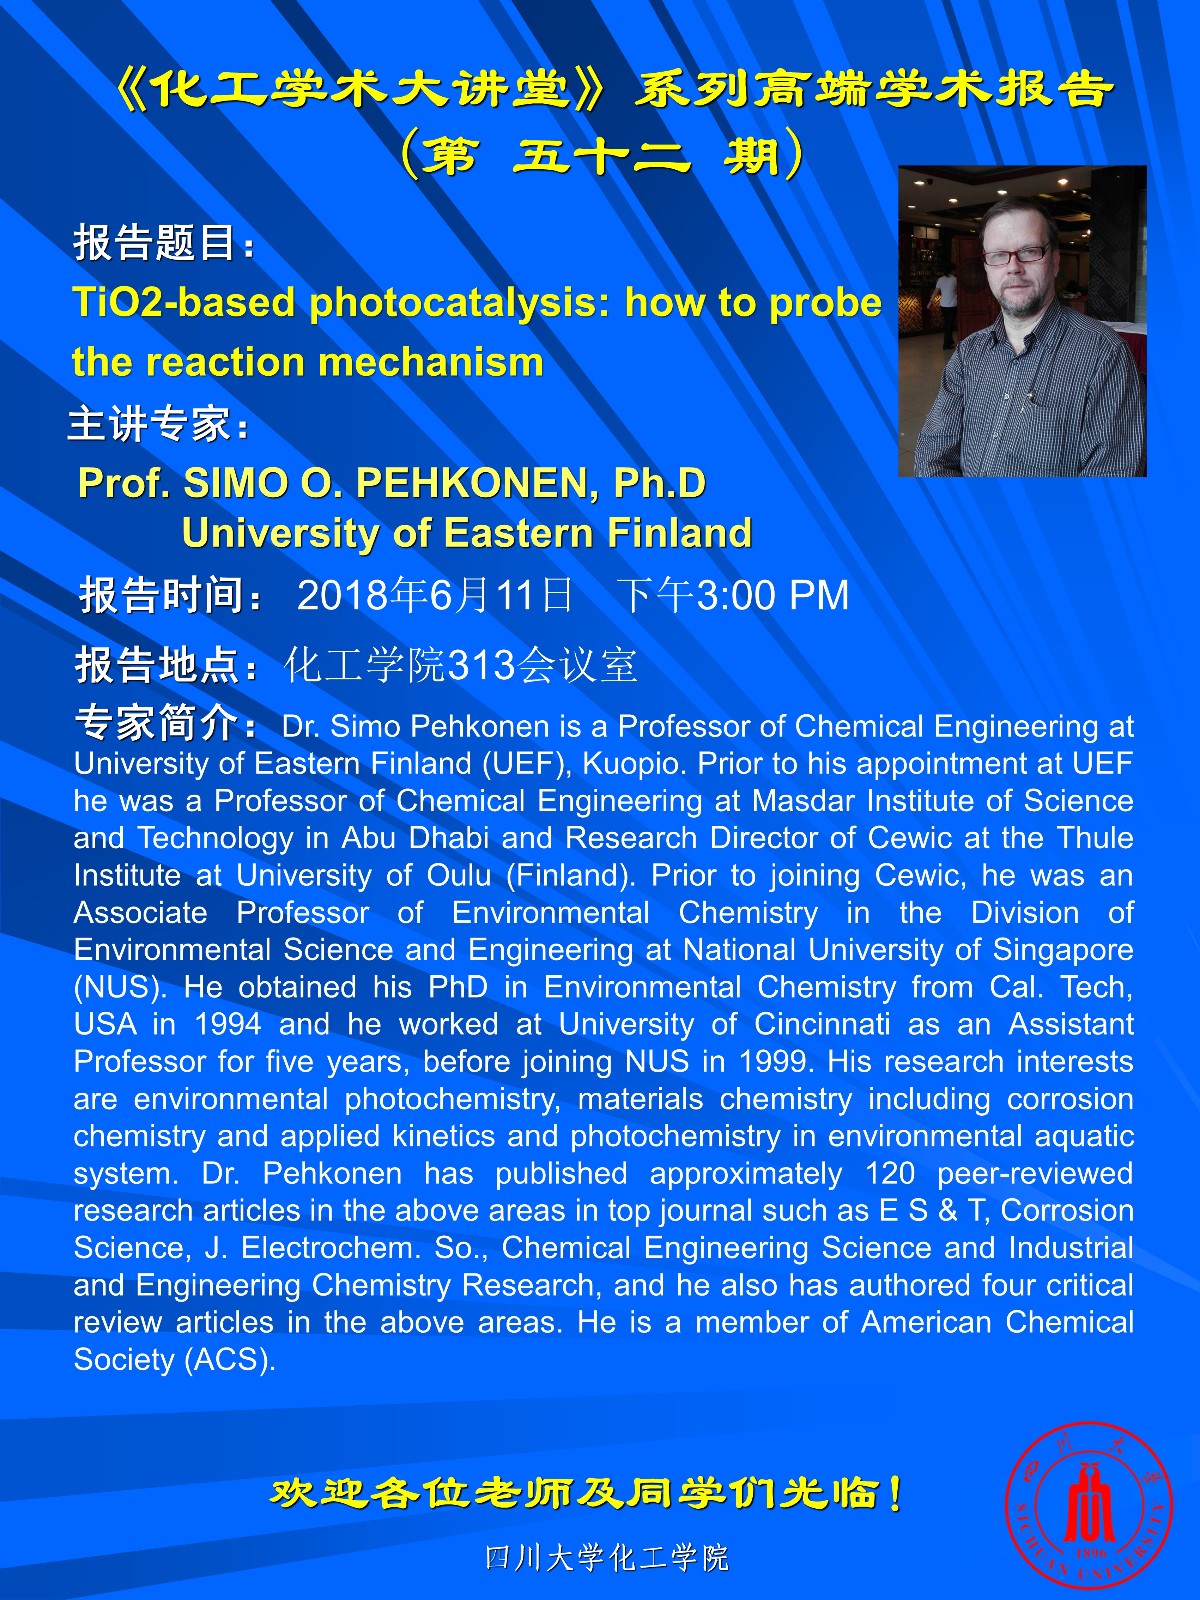 化工学术大讲堂- Prof. SIMO O. PEHKONEN, Ph.D 五十二期.jpg